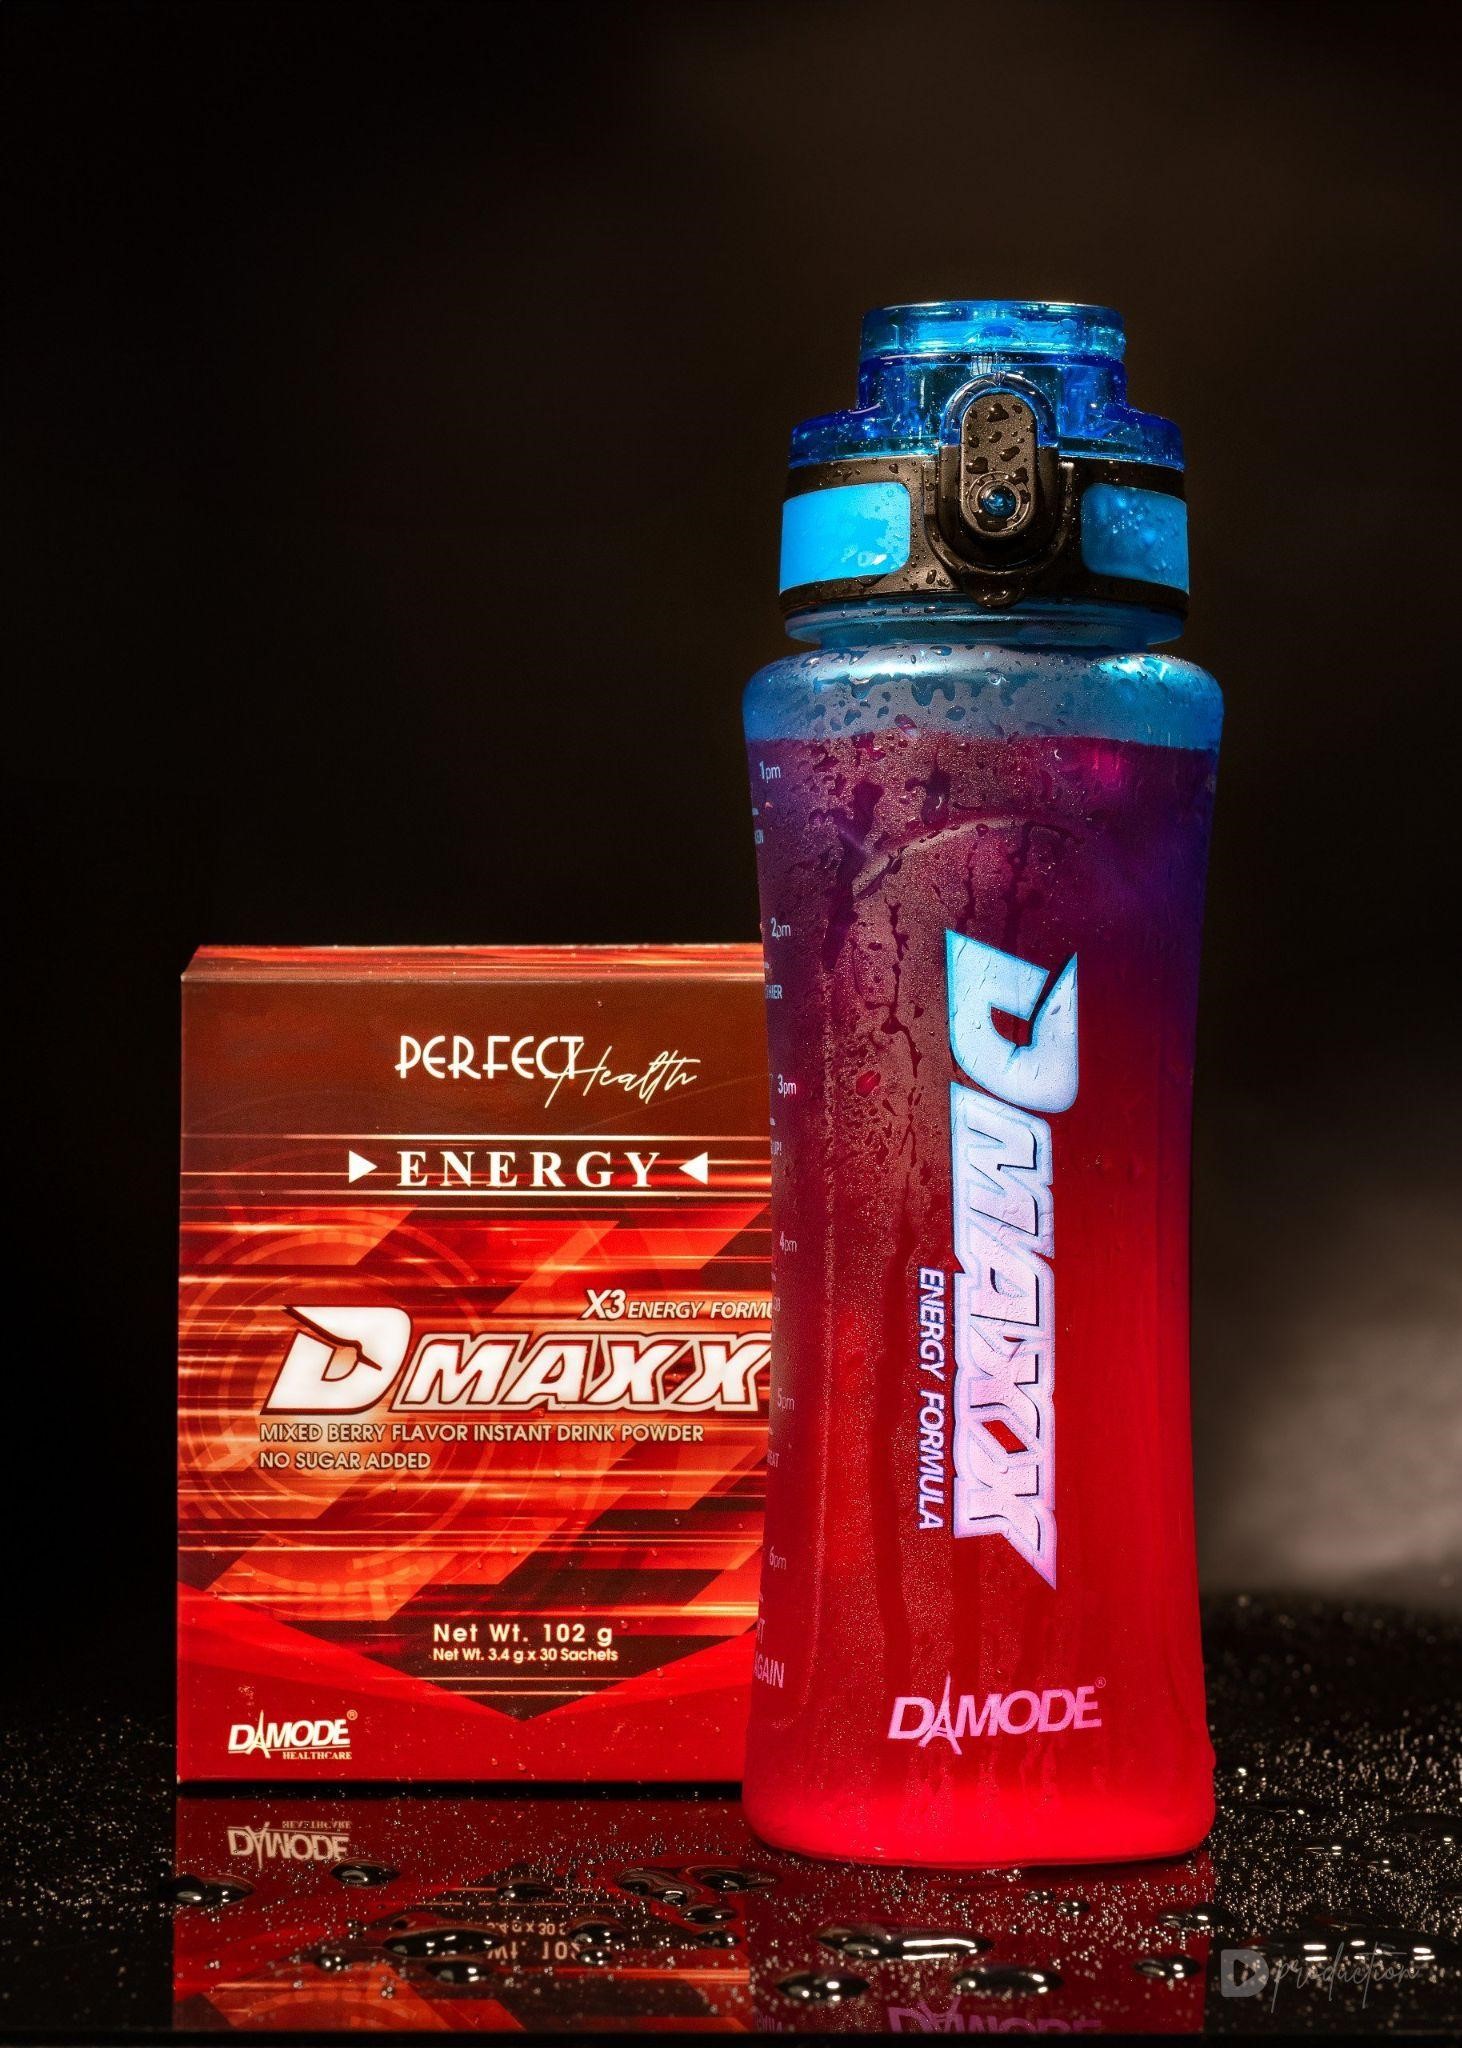 'Giang cư mận' háo hức với thức uống năng lượng không đường mới từ Thái Lan mang tên Dmaxx - ảnh 1